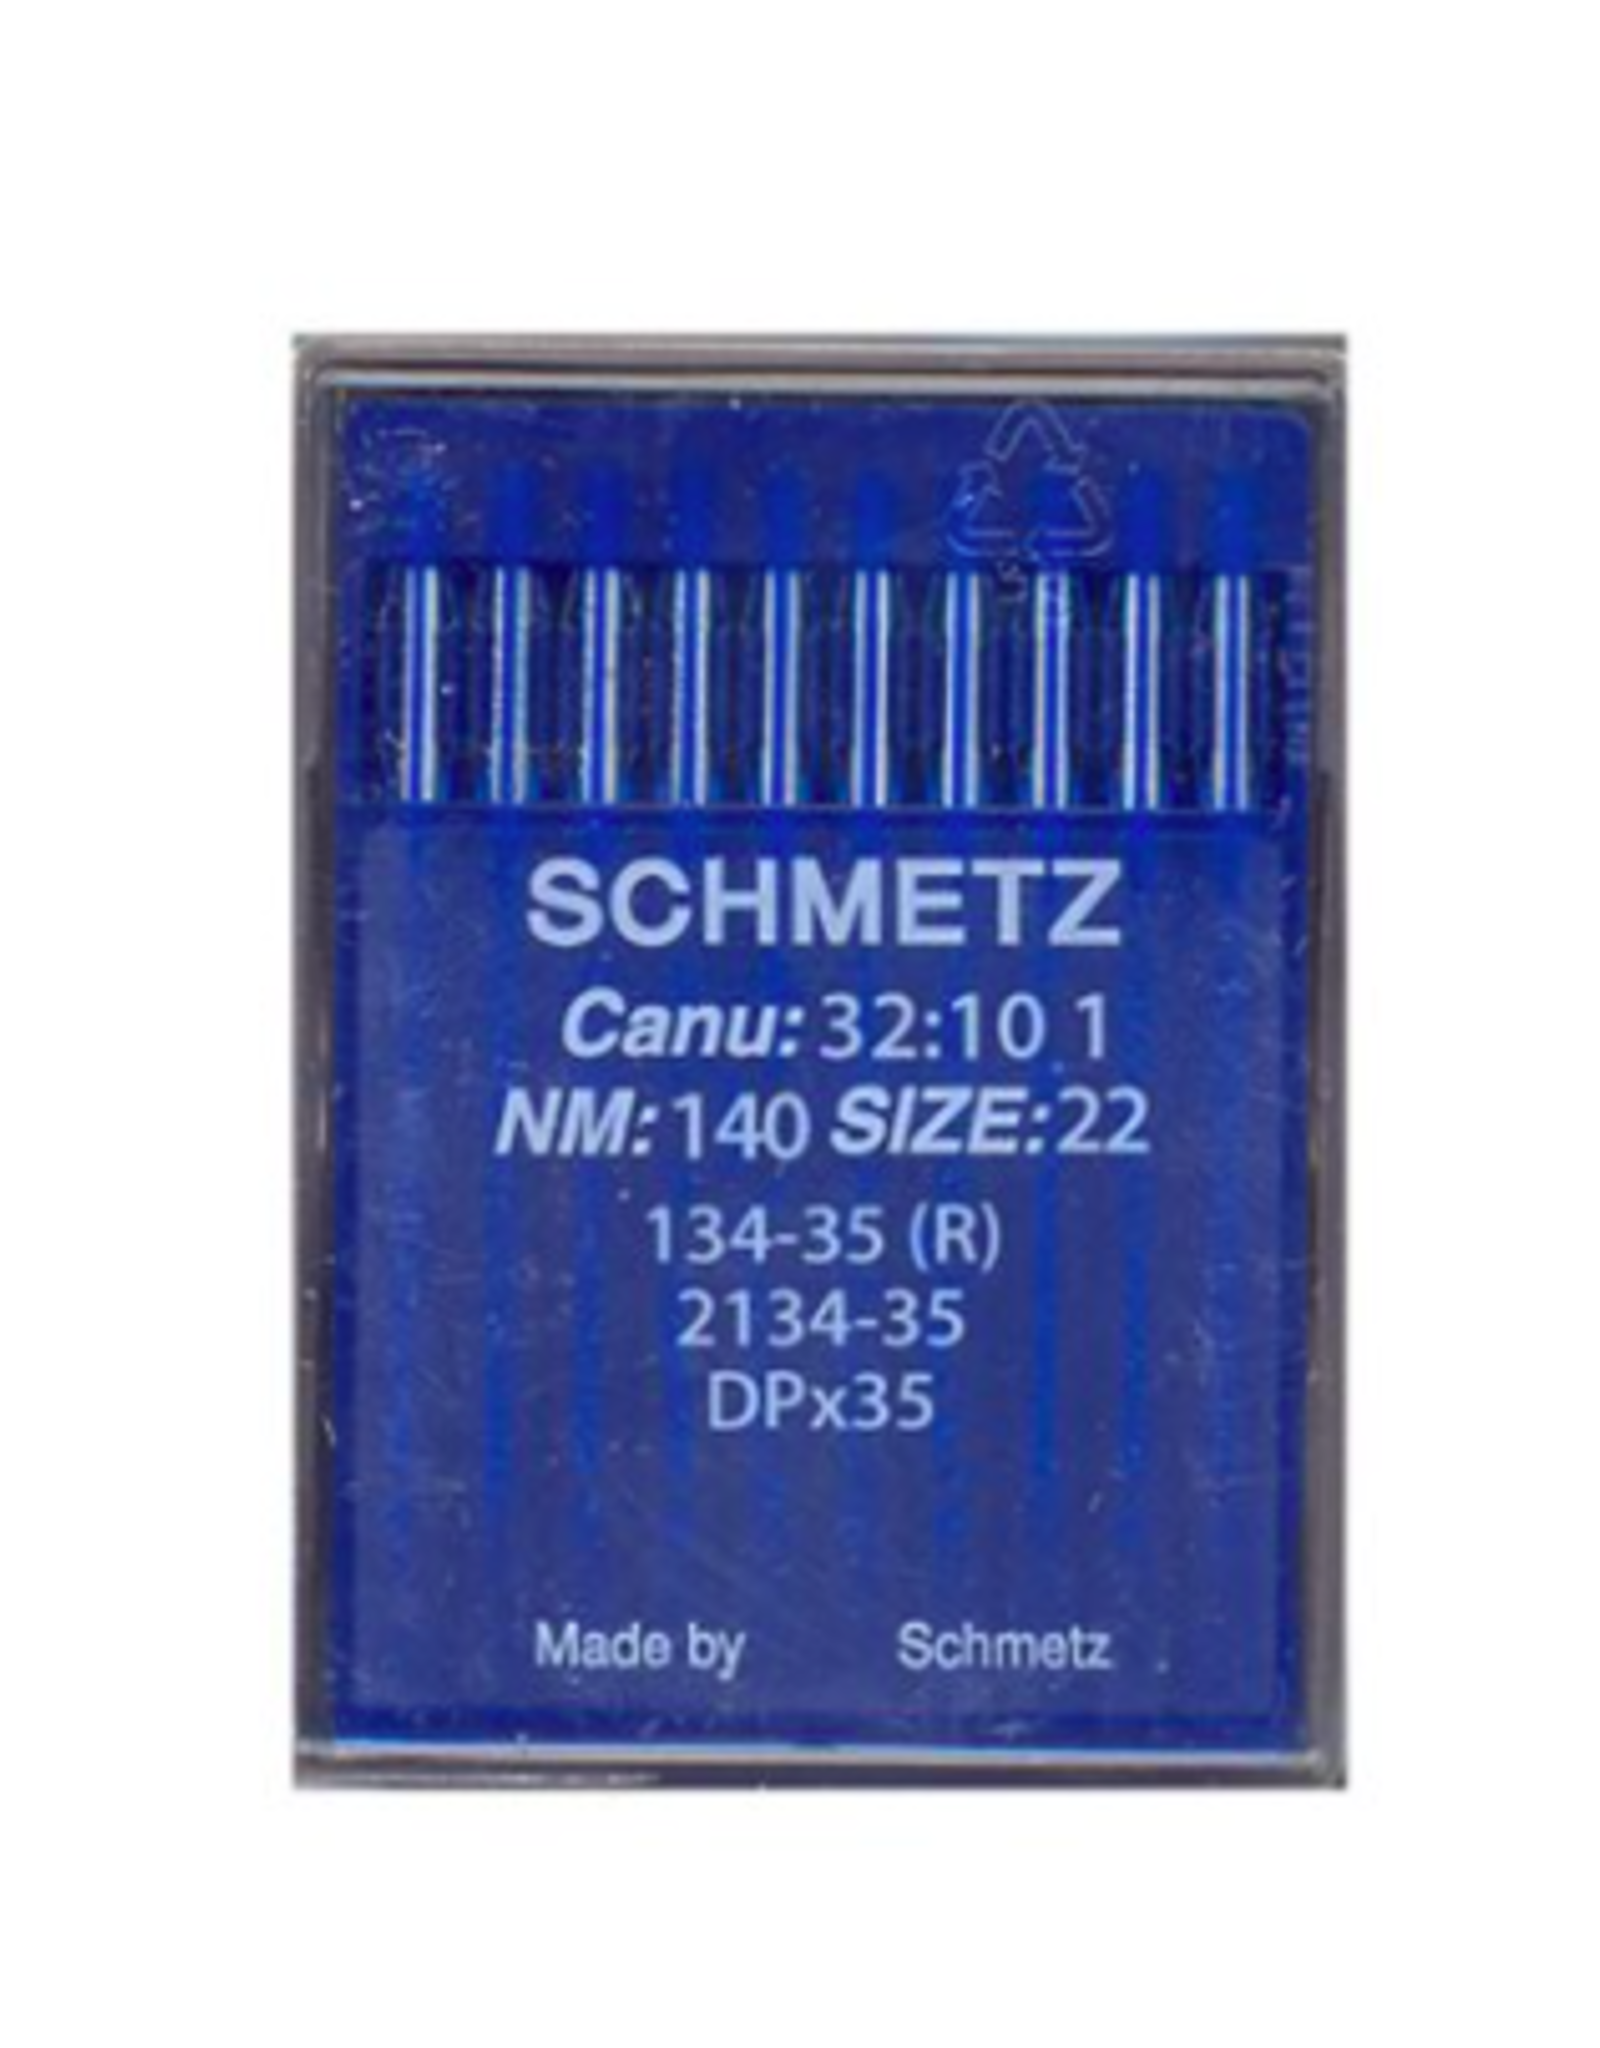 Schmetz industrial - 134-35LR - DPx35LR (size 140/22)